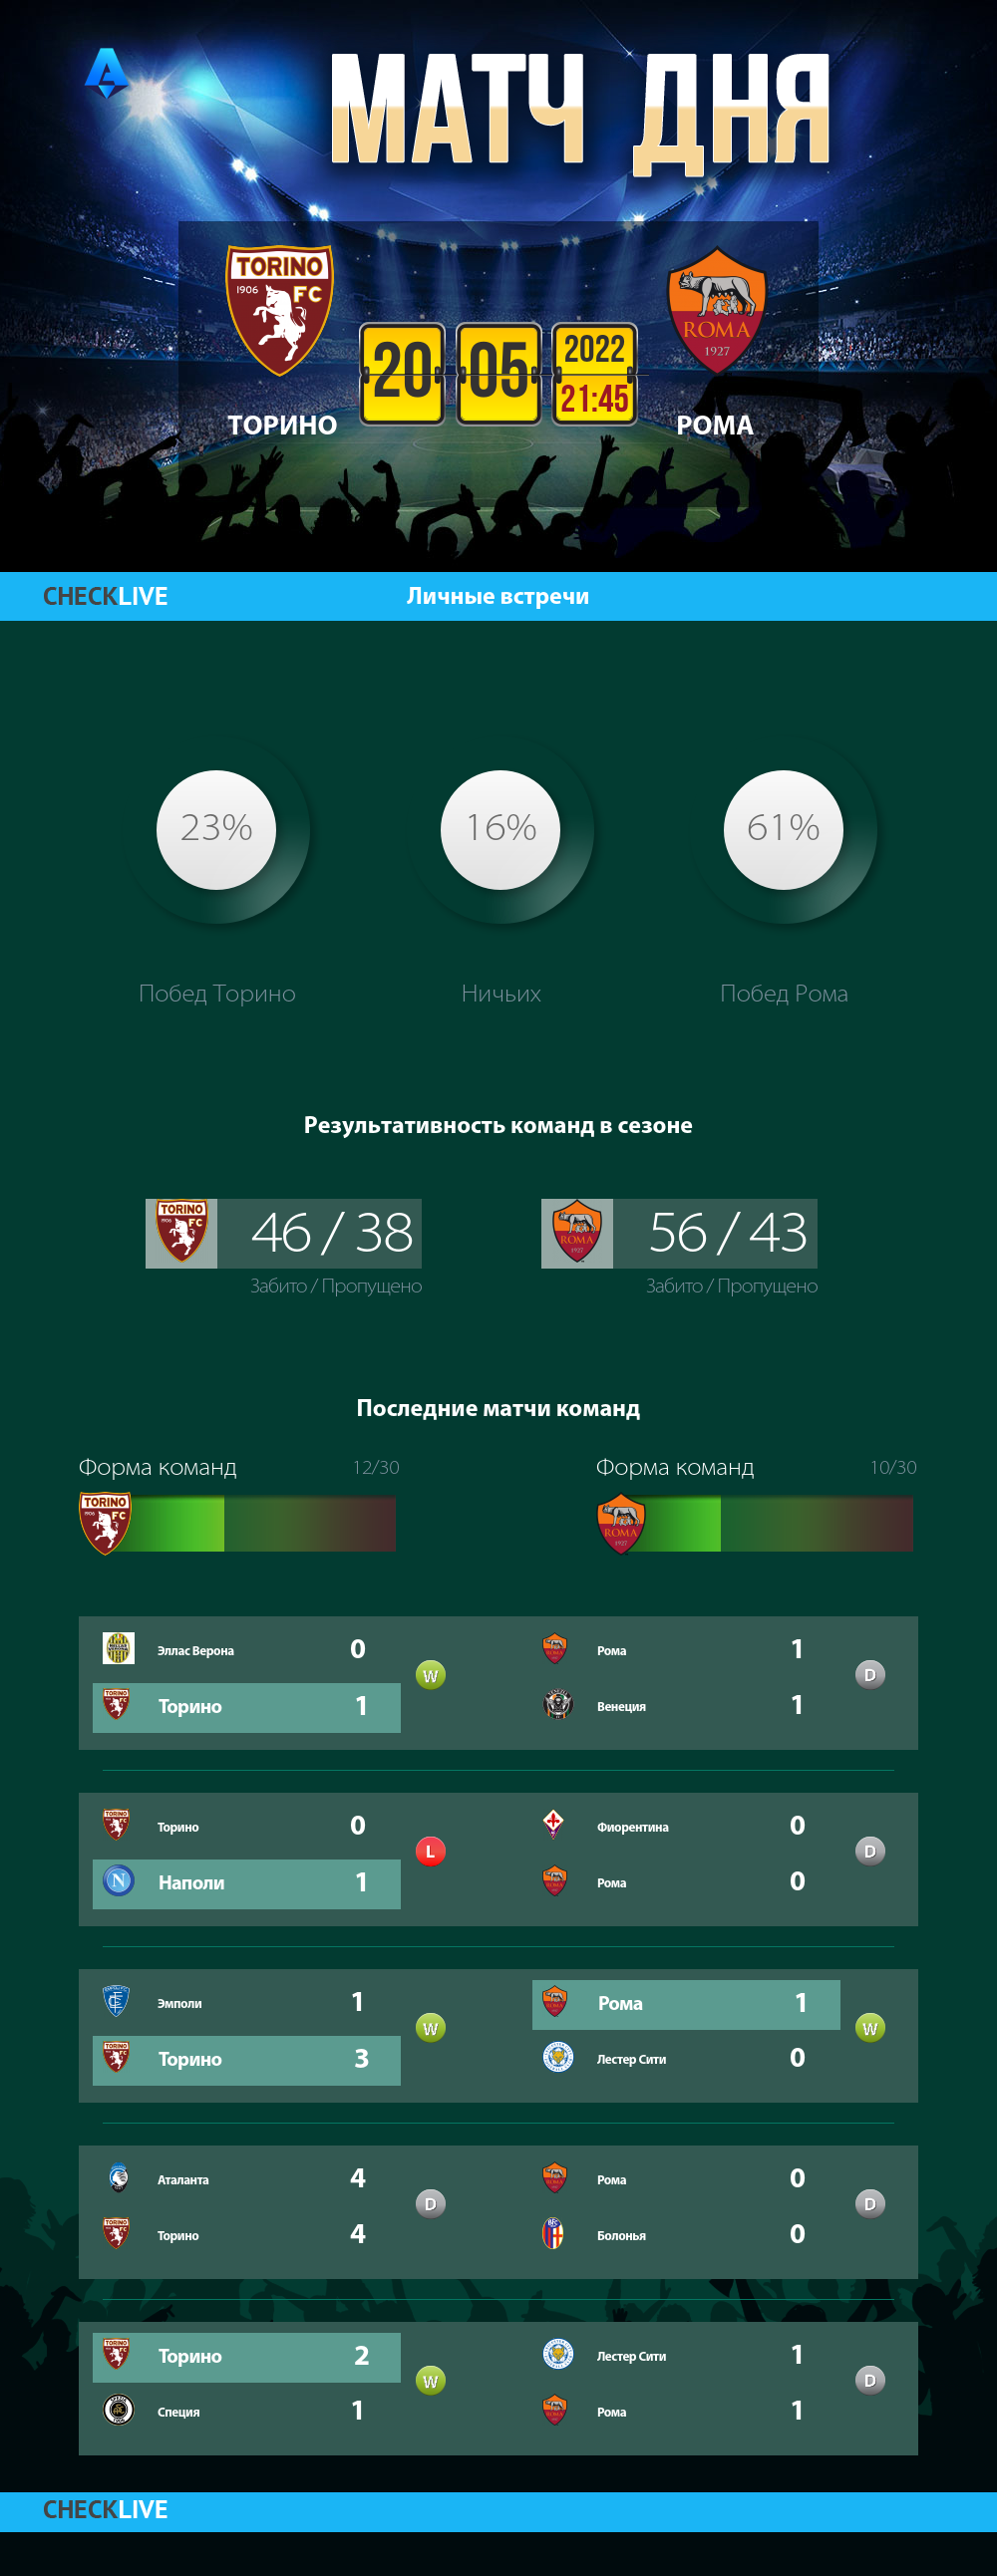 Инфографика Торино и Рома матч дня 20.05.2022